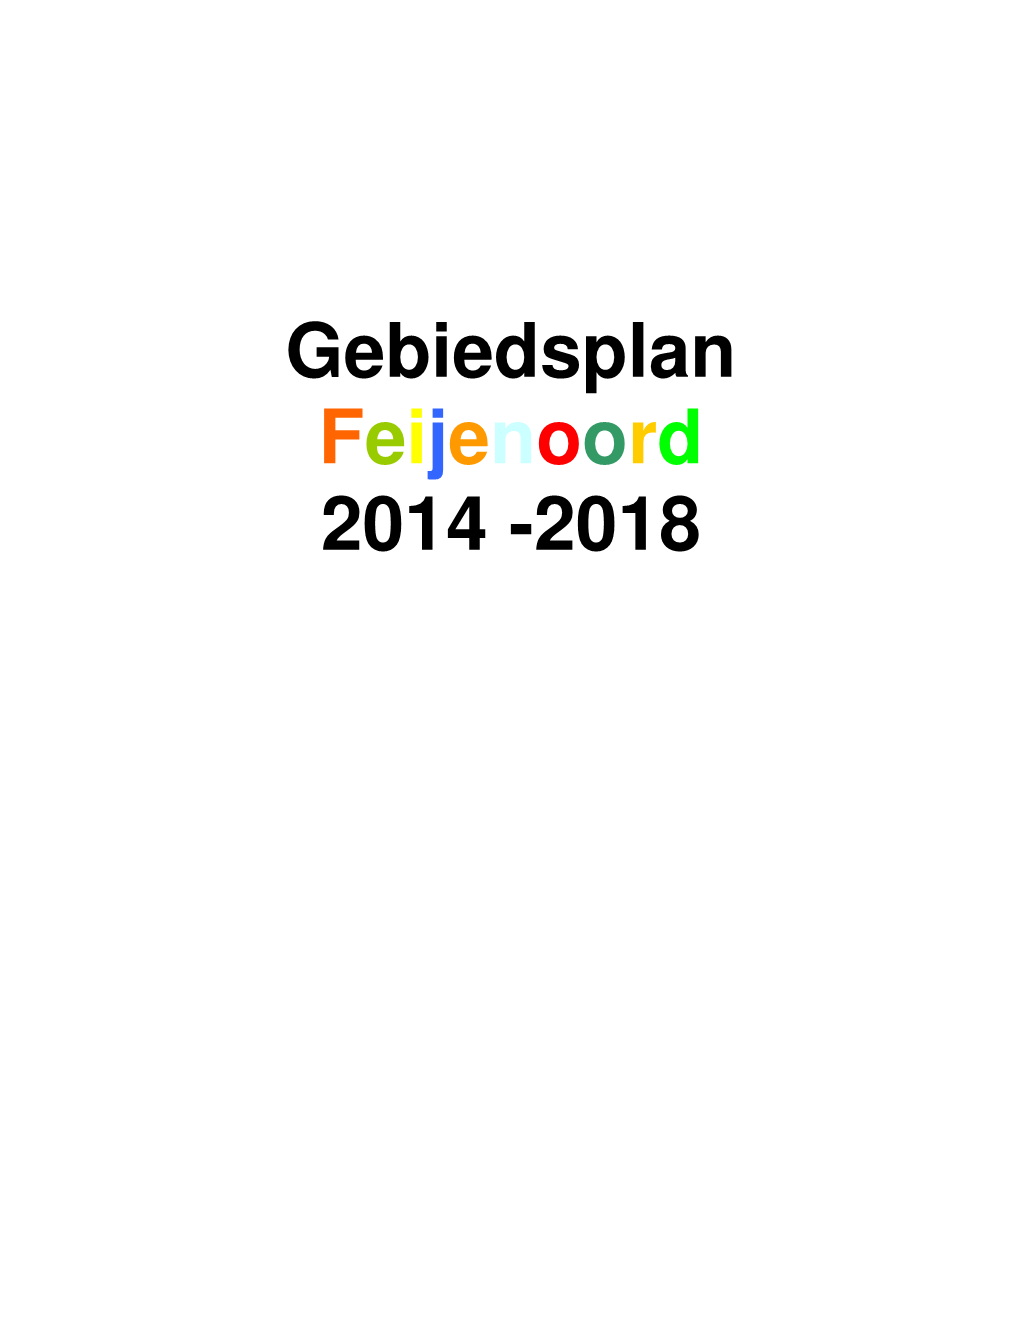 Gebiedsplan Feijenoord 2014 -2018